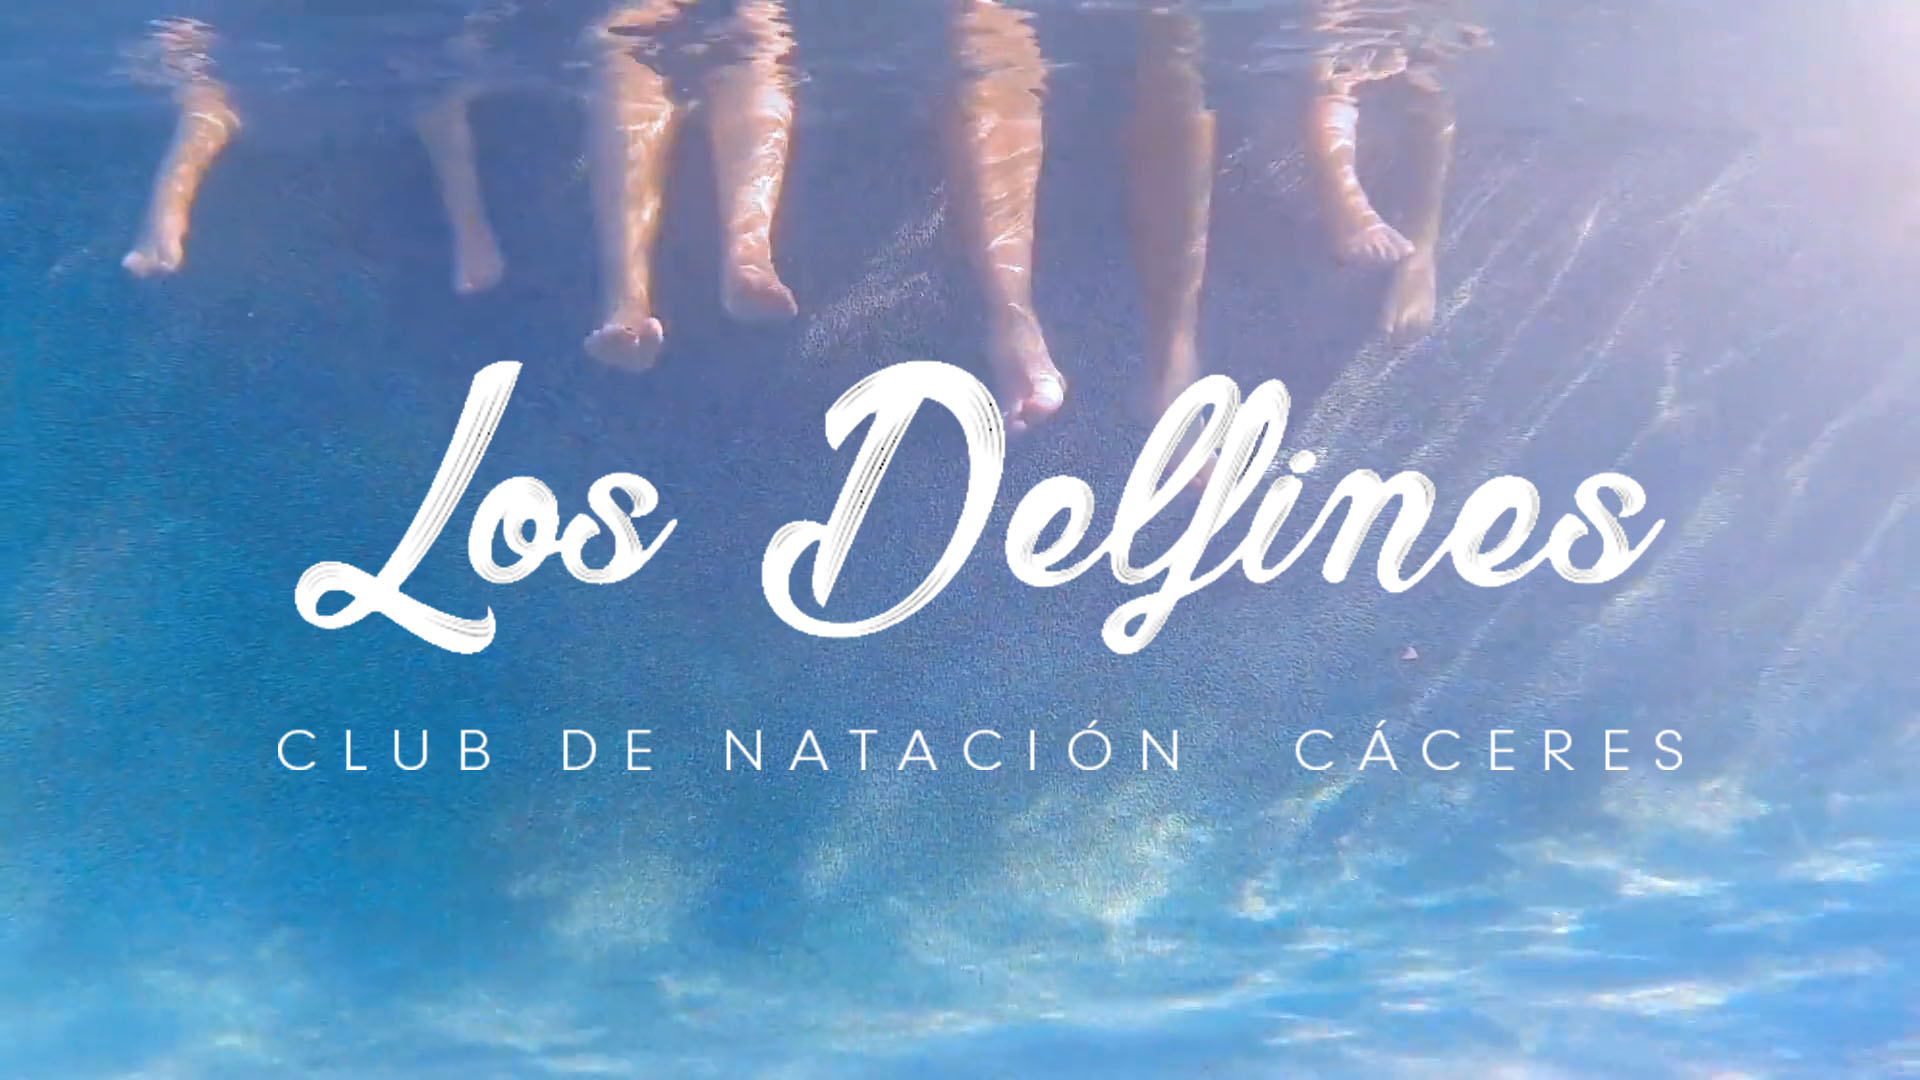 Club de Natación Cáceres, Los Delfines